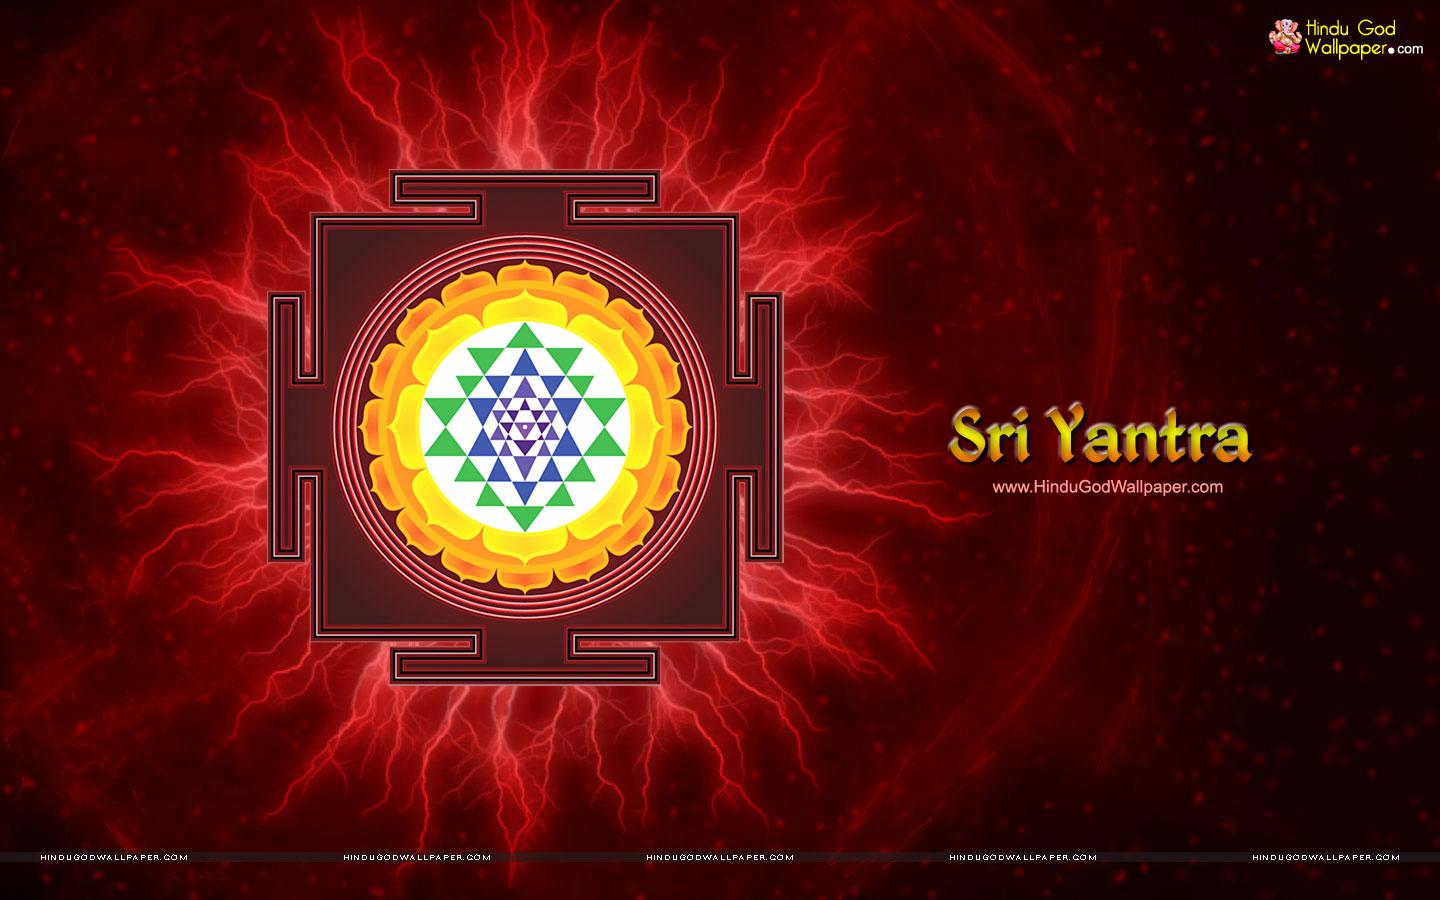 Sri Yantra Wallpaper & Picture Free Download